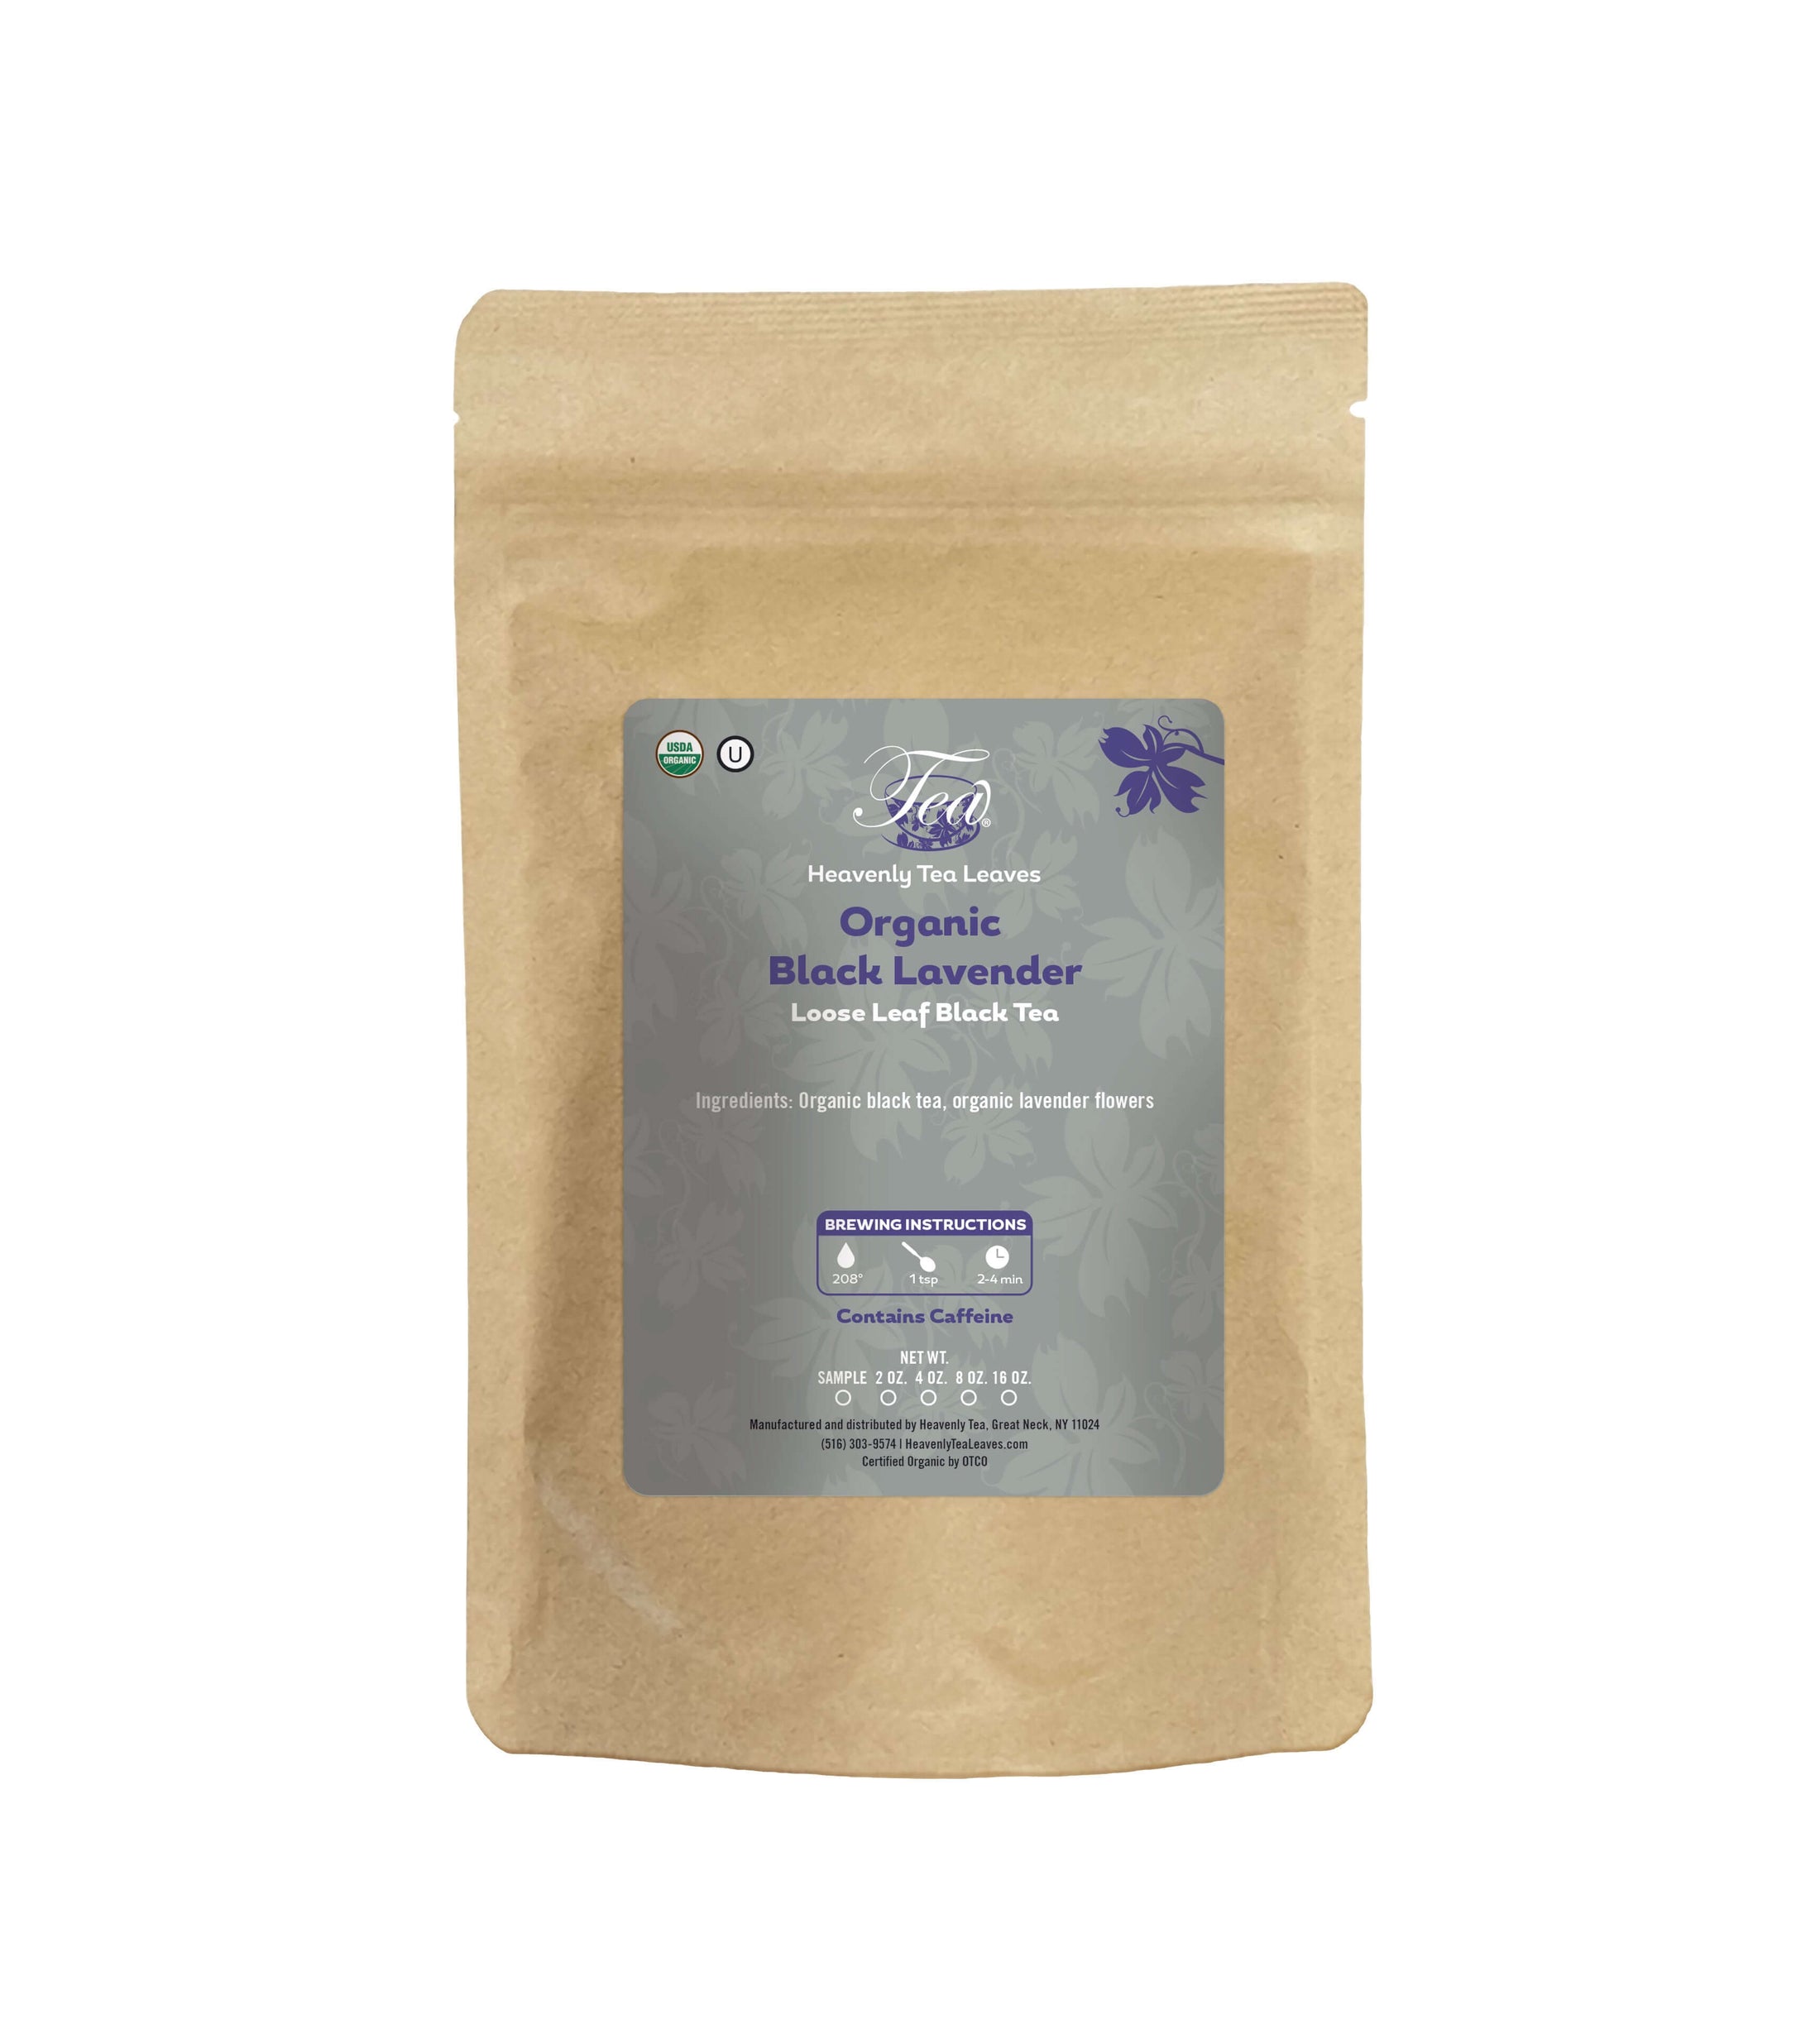 Organic Black Lavender - Loose Leaf Black Tea | Heavenly Tea Leaves